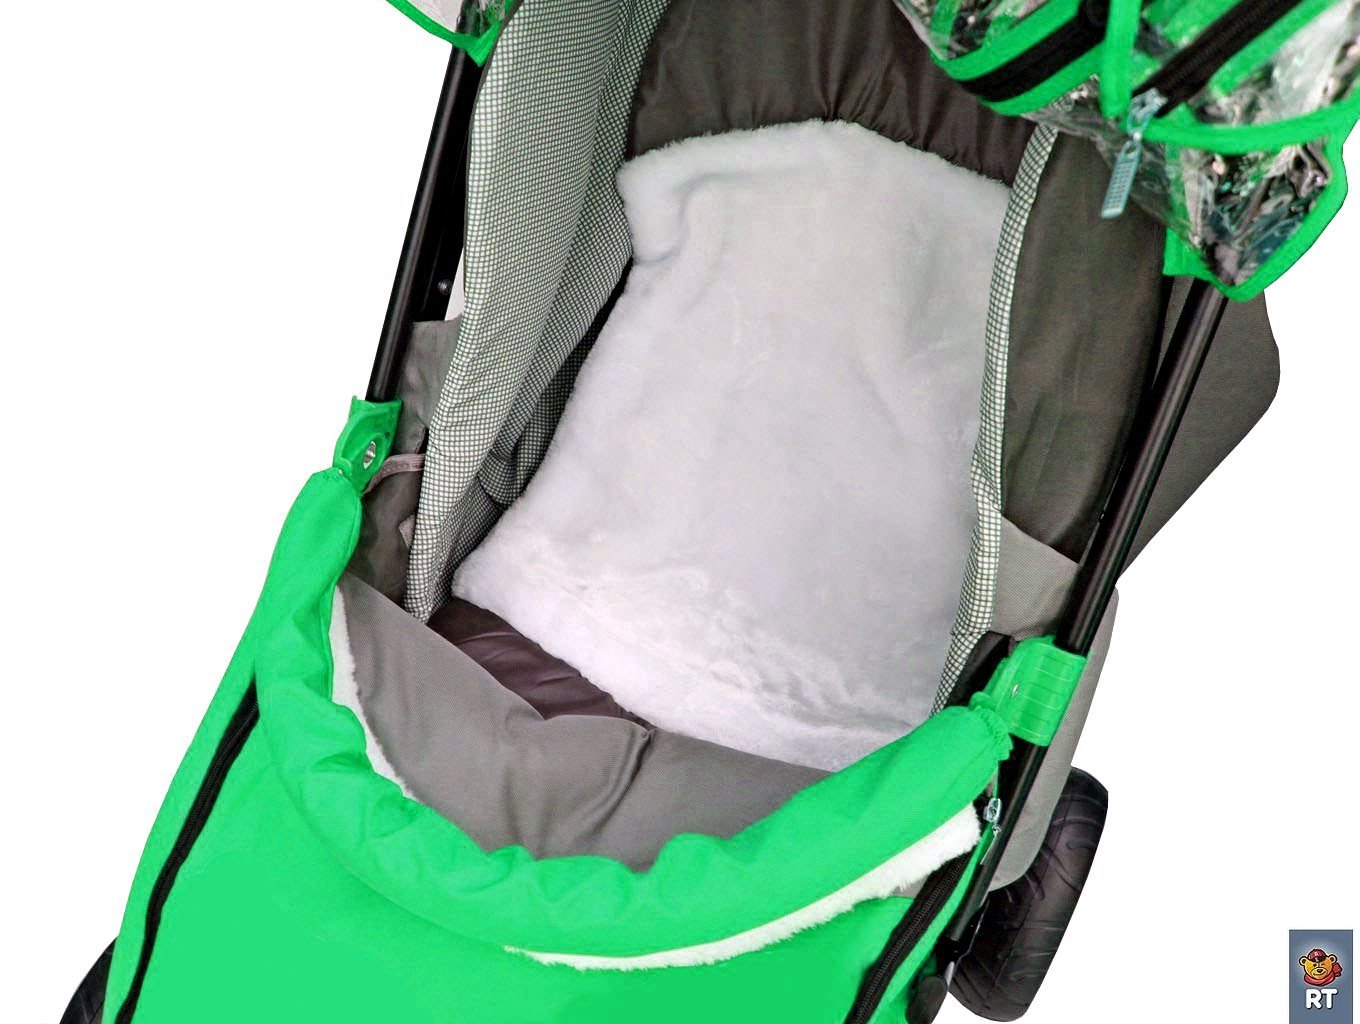 Санки-коляска Snow Galaxy City-1 - Совушки на зеленом, на больших колесах Eva, сумка, варежки  